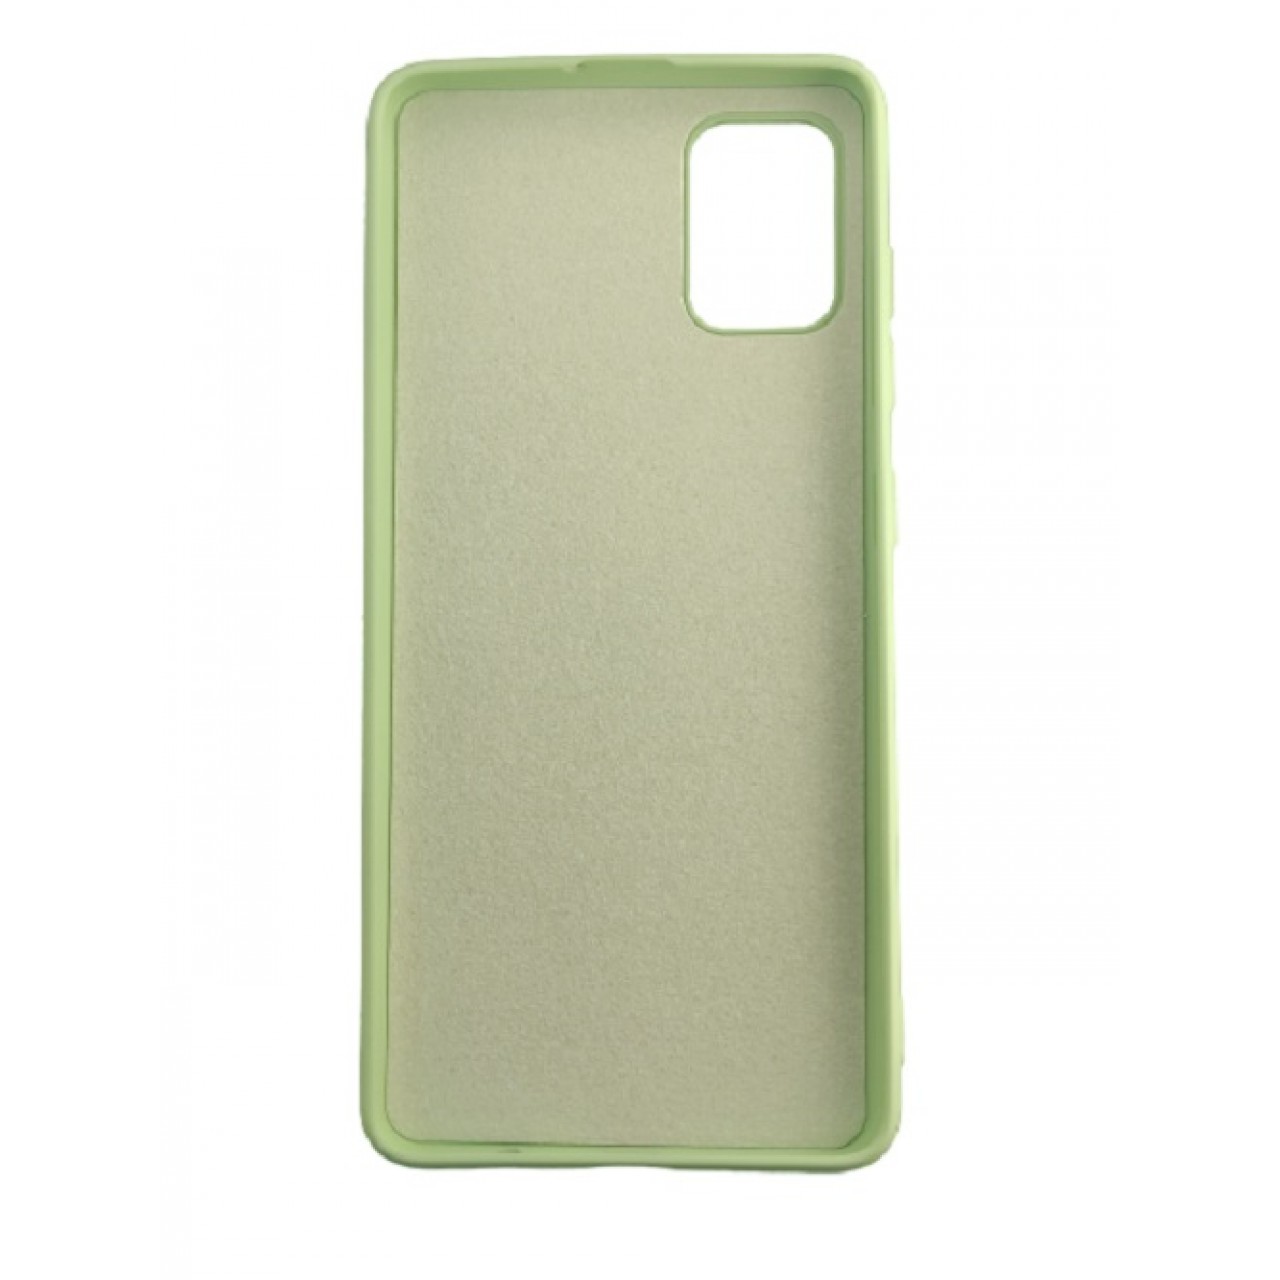 Θήκη Προστασίας Σιλικόνης Samsung Galaxy A71 - Back Cover Silicone Case Oem - Mint